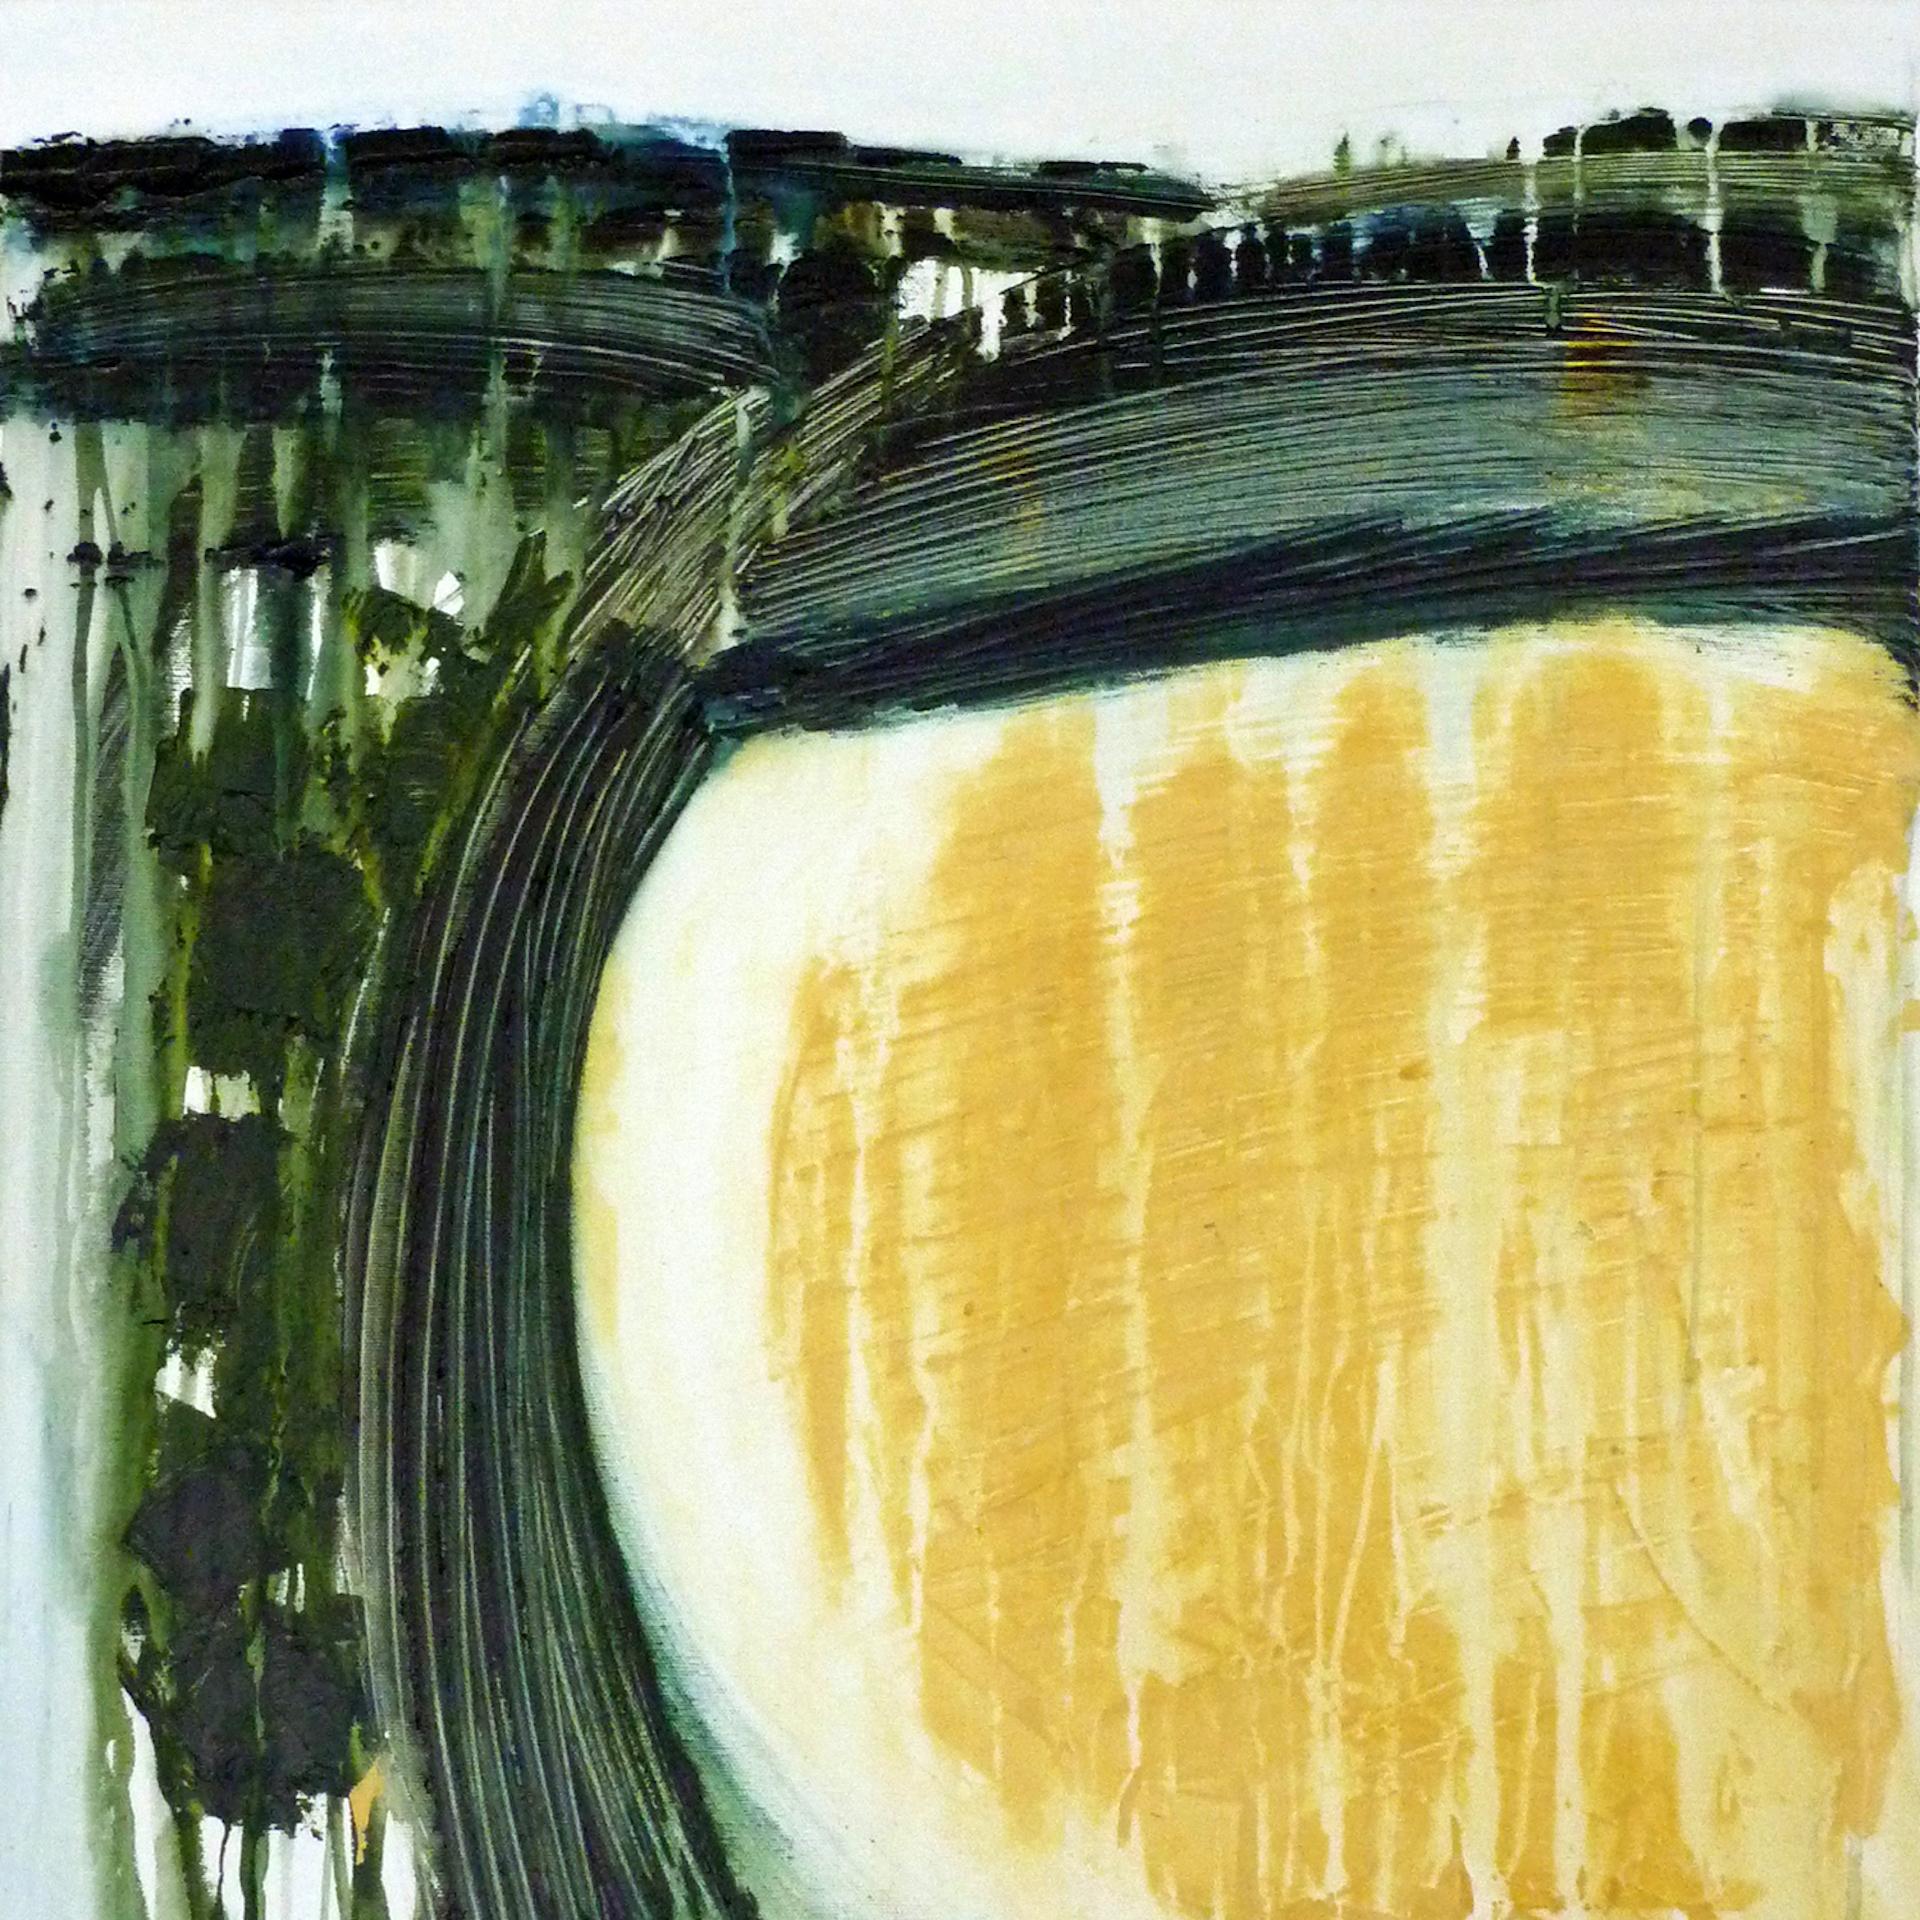 Gina Parr
Fils, soleil, été
Peinture originale de paysage contemporain
Huile et acrylique sur toile
Taille : H 60cm x L 60cm x P4 cm
Vendu sans cadre
(Veuillez noter que les images in situ sont purement indicatives de l'aspect d'une